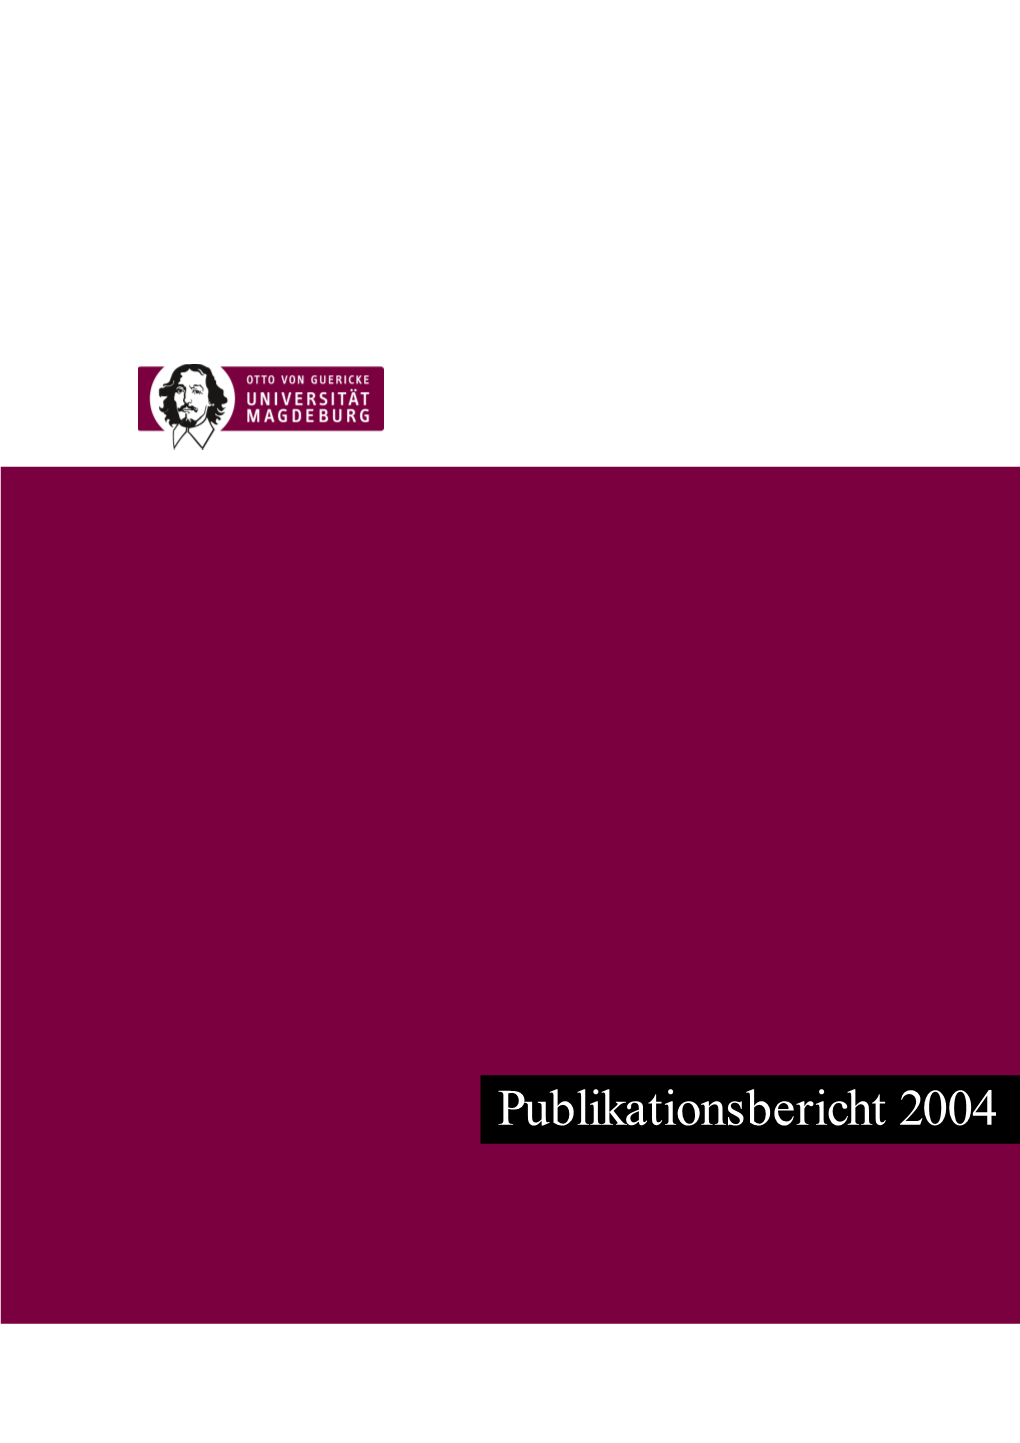 Publikationsbericht 2004 Publikationsbericht 2004: Otto-Von-Guericke-Universität Magdeburg